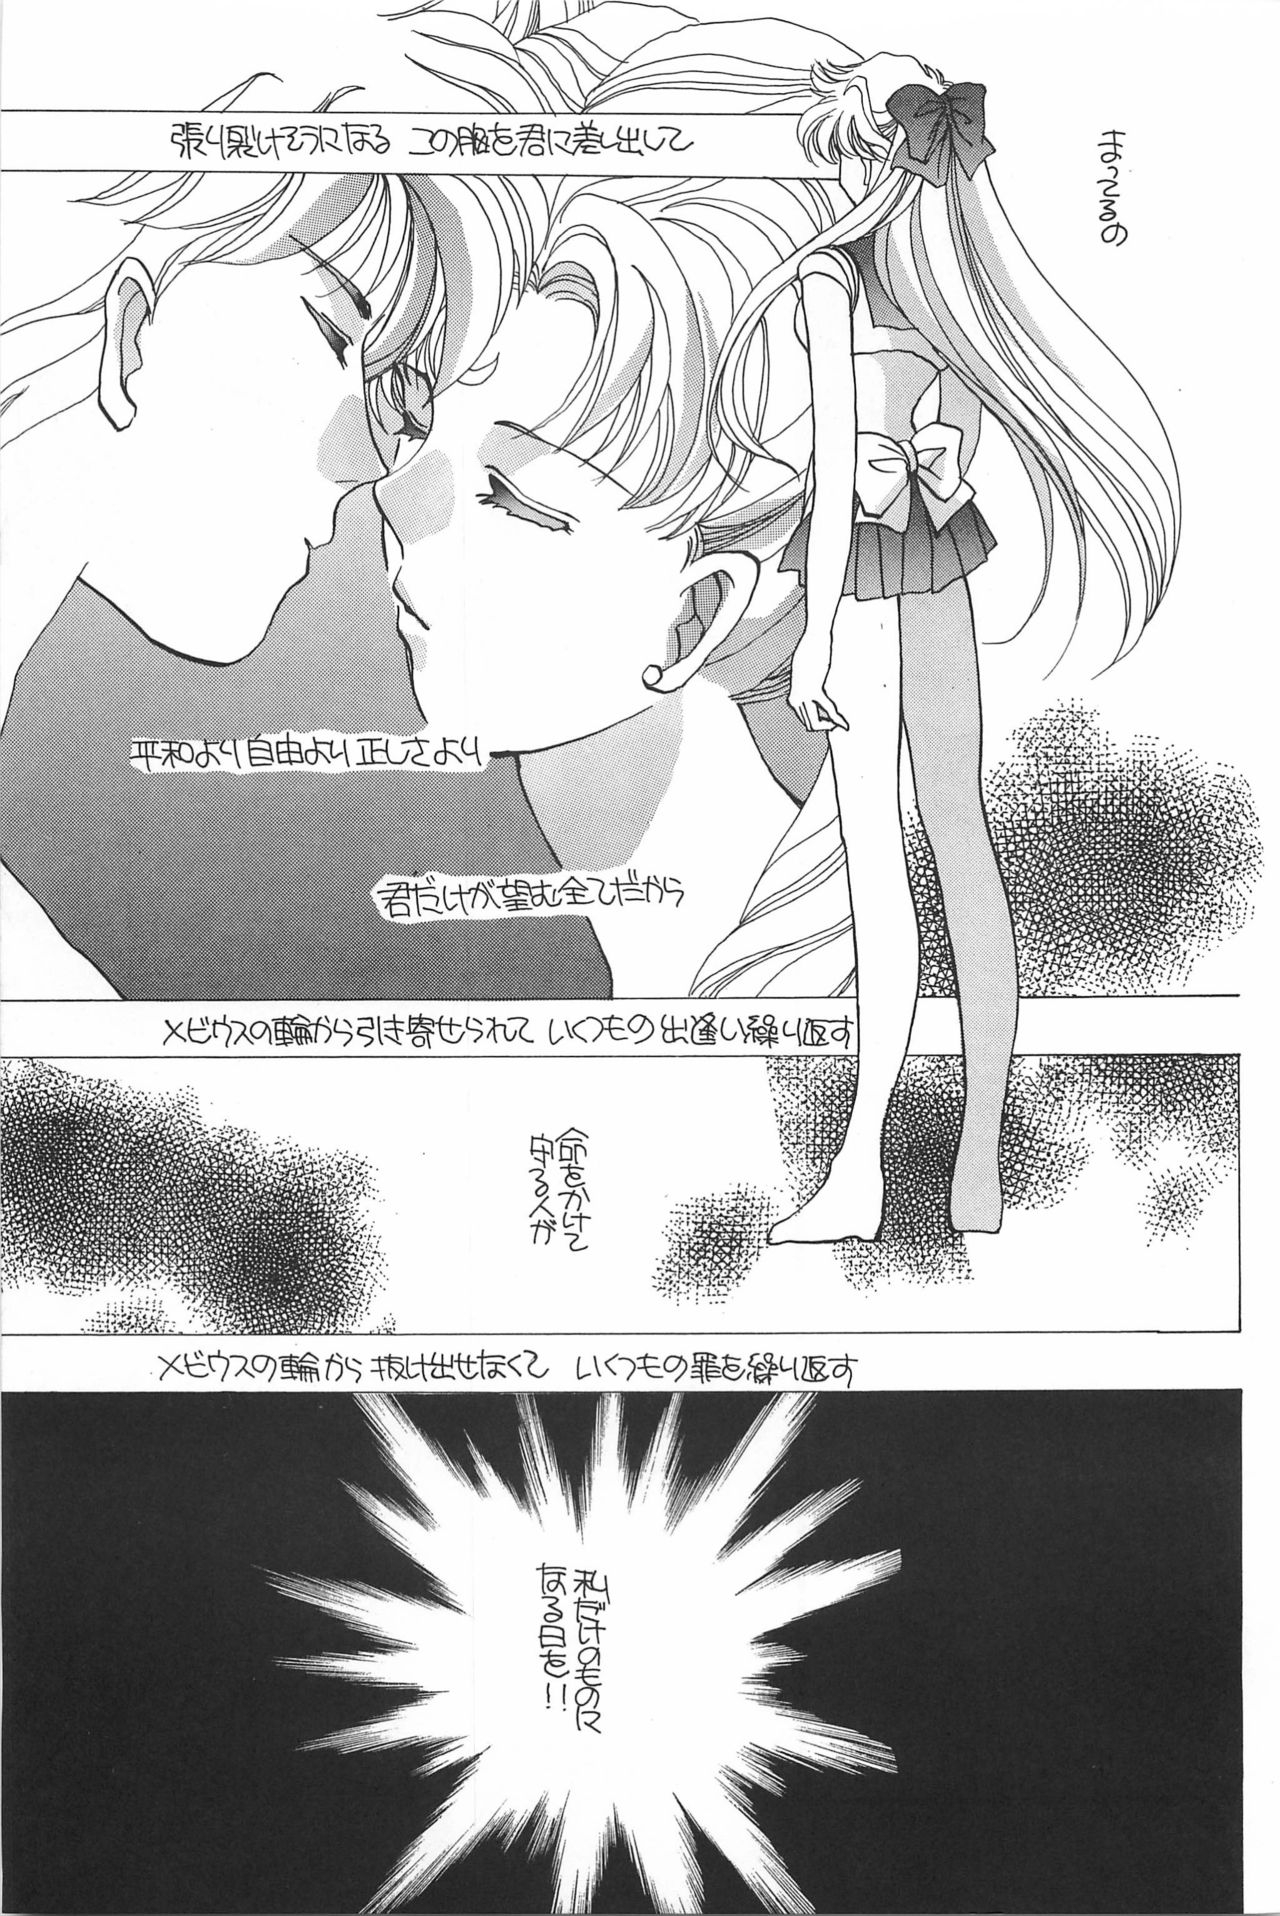 [Hello World (Muttri Moony)] Kaze no You ni Yume no You ni - Sailor Moon Collection (Sailor Moon) 98